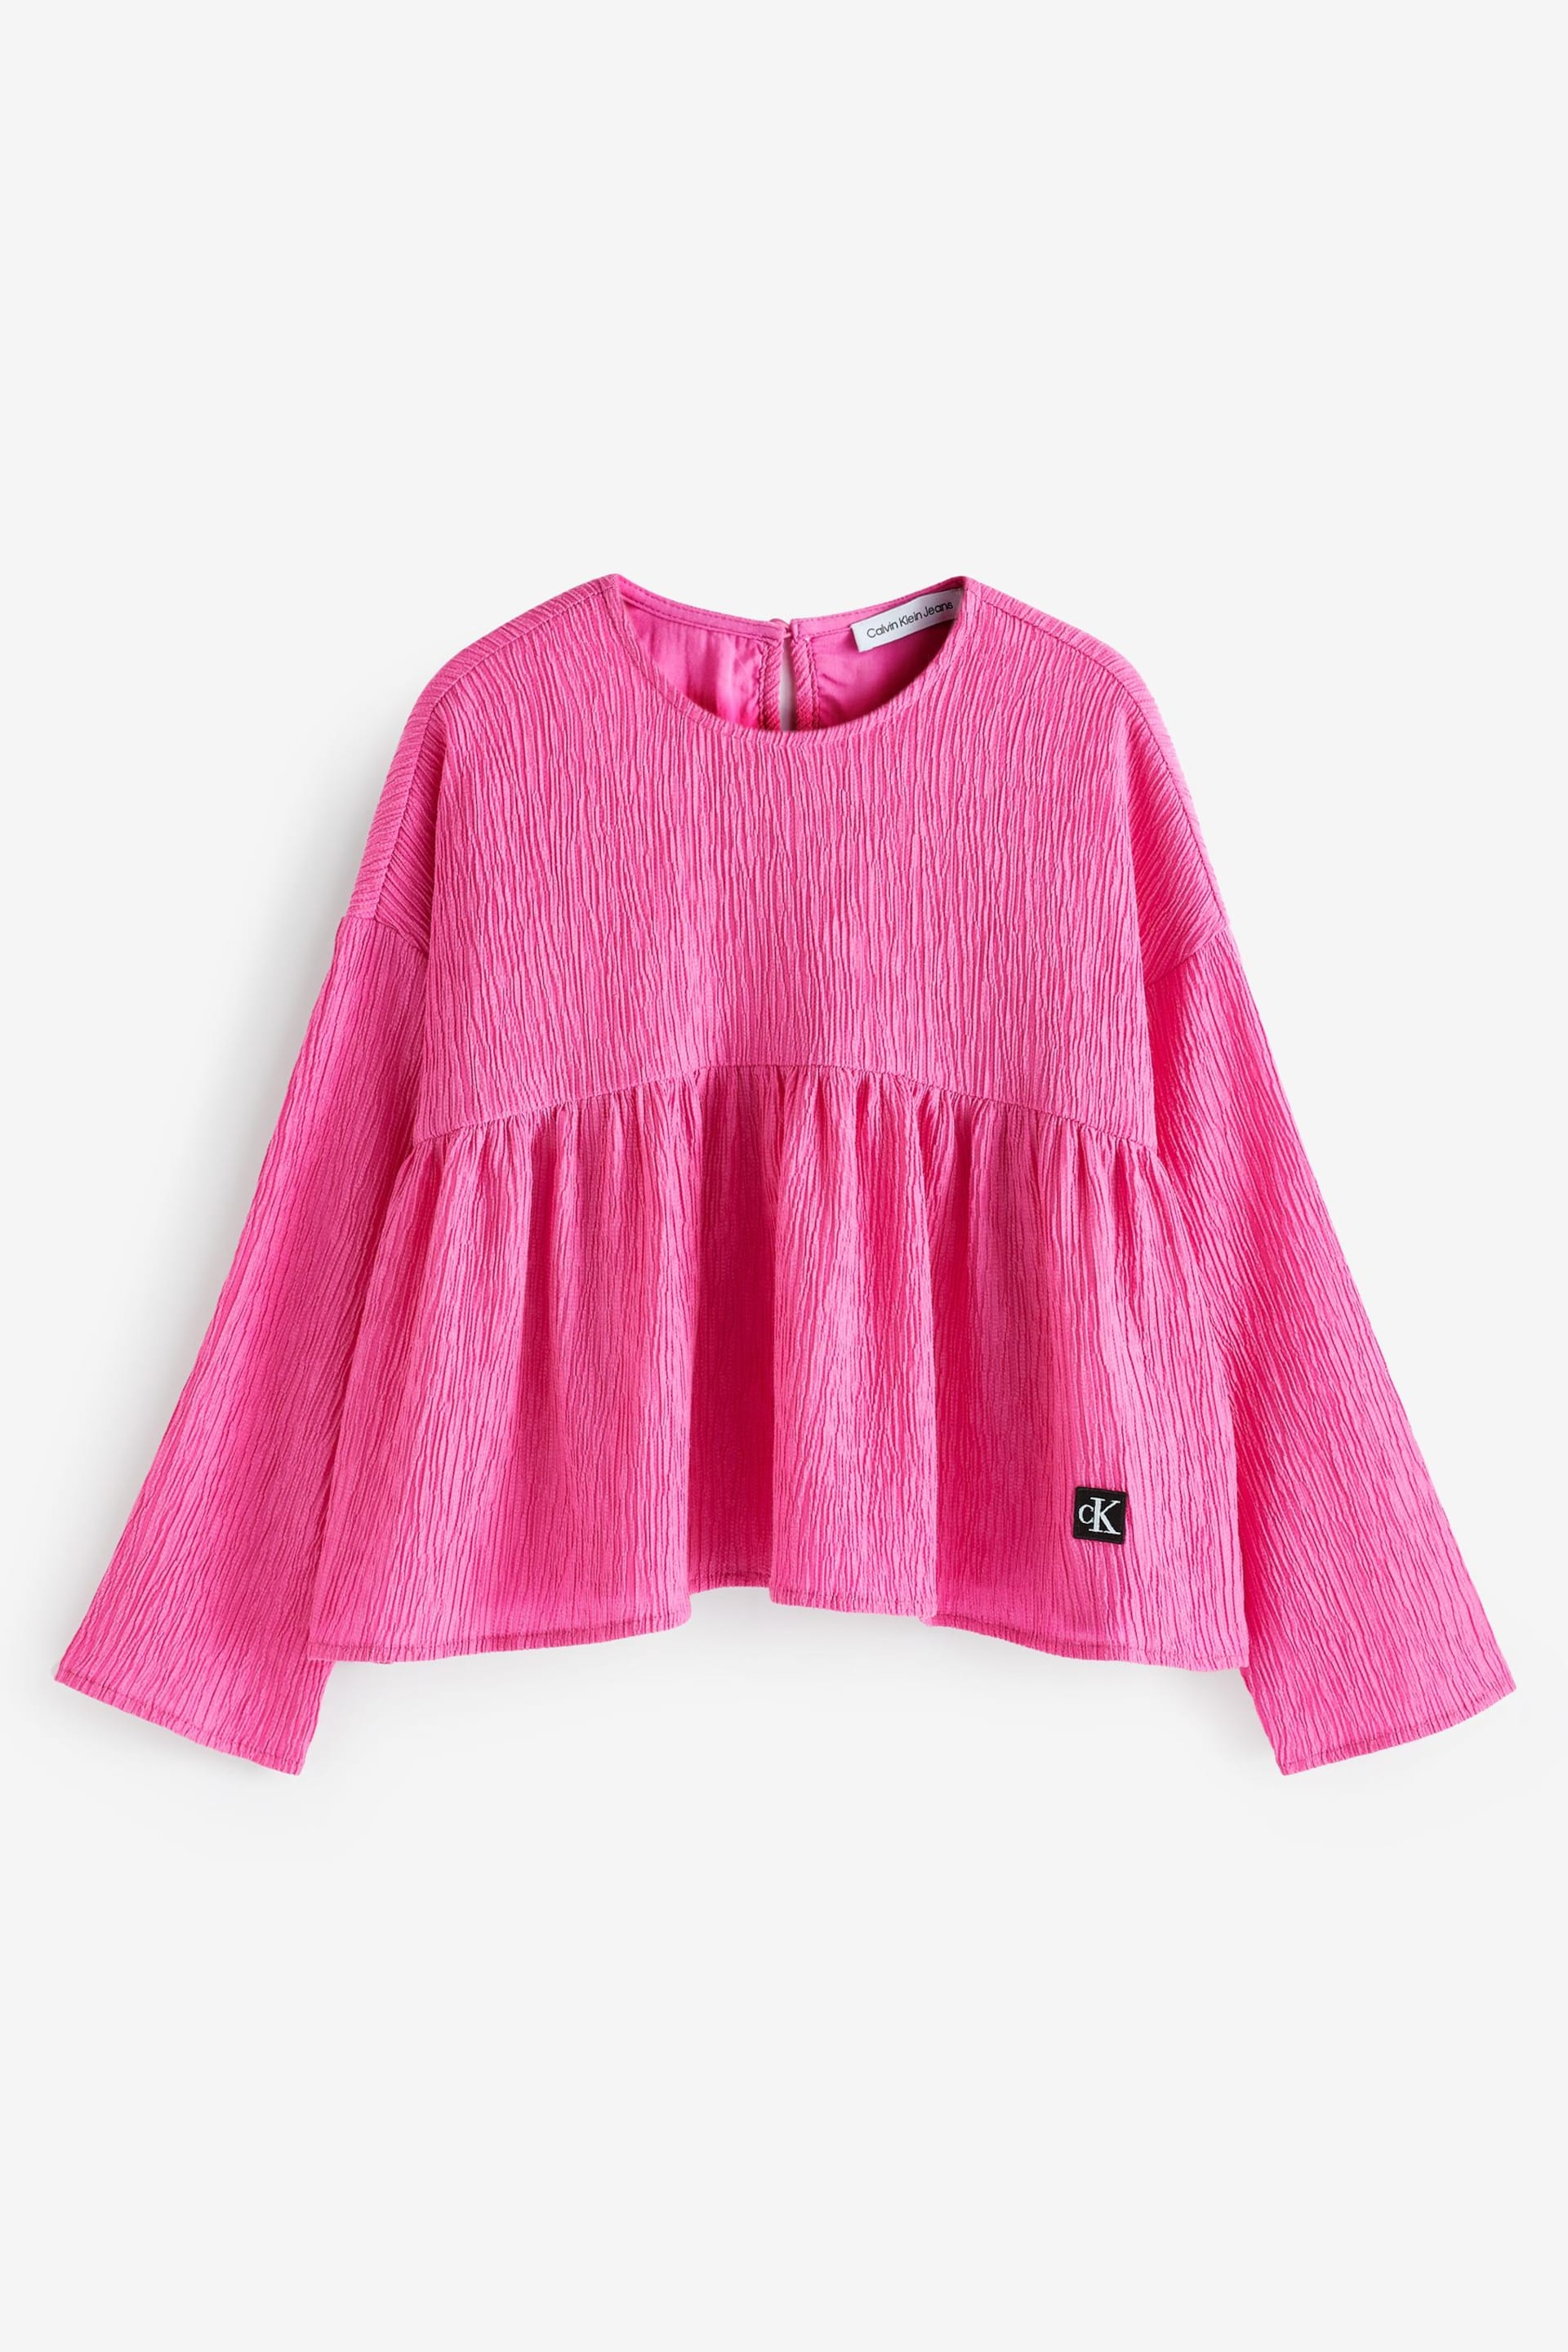 Calvin Klein Jeans Pink Crinkle Long Sleeve Top - Image 4 of 5